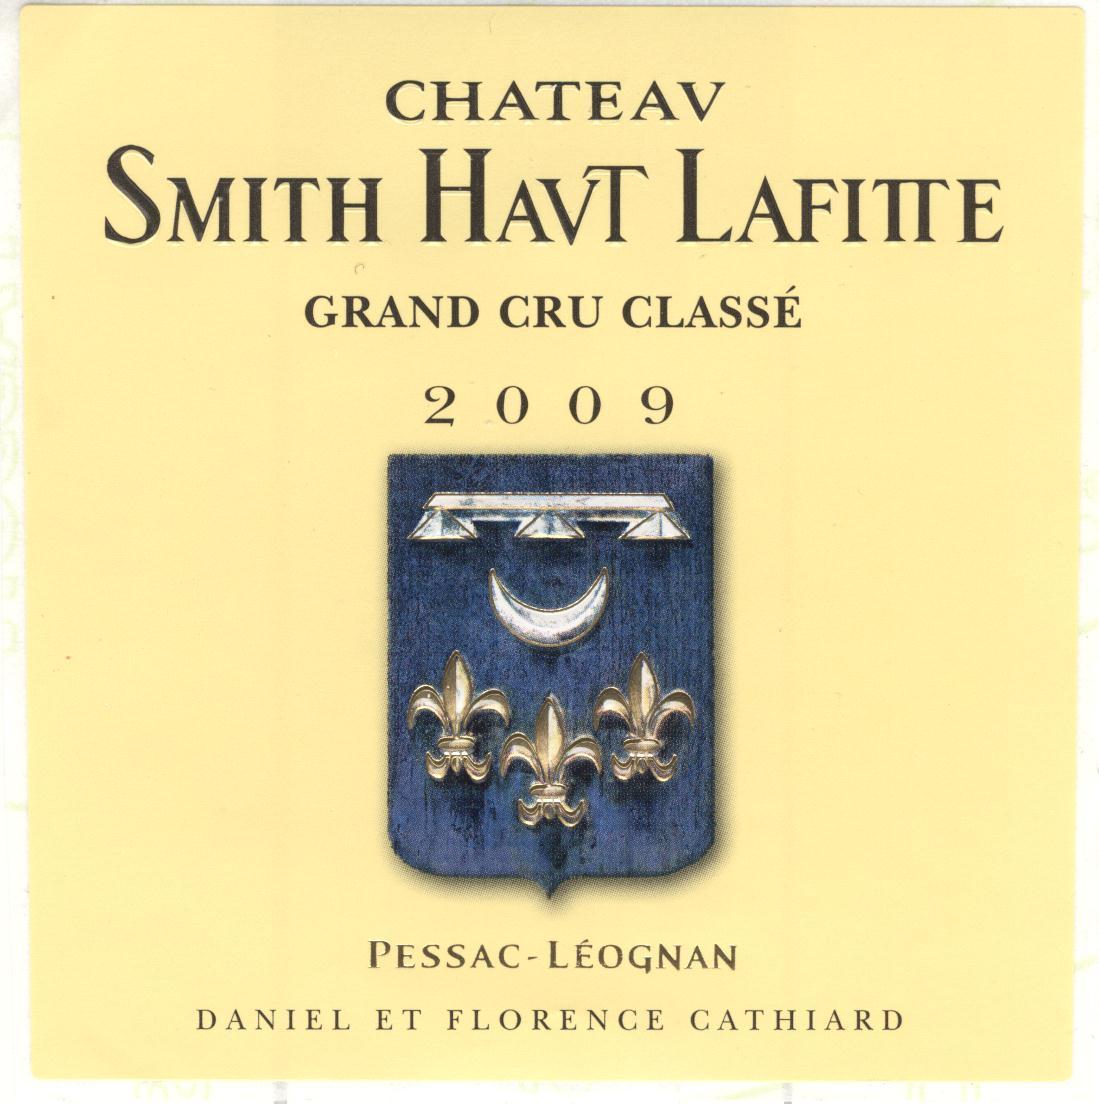 史密斯拉菲特酒庄干红Château Smith-Haut-Lafitte Pessac-Léognan